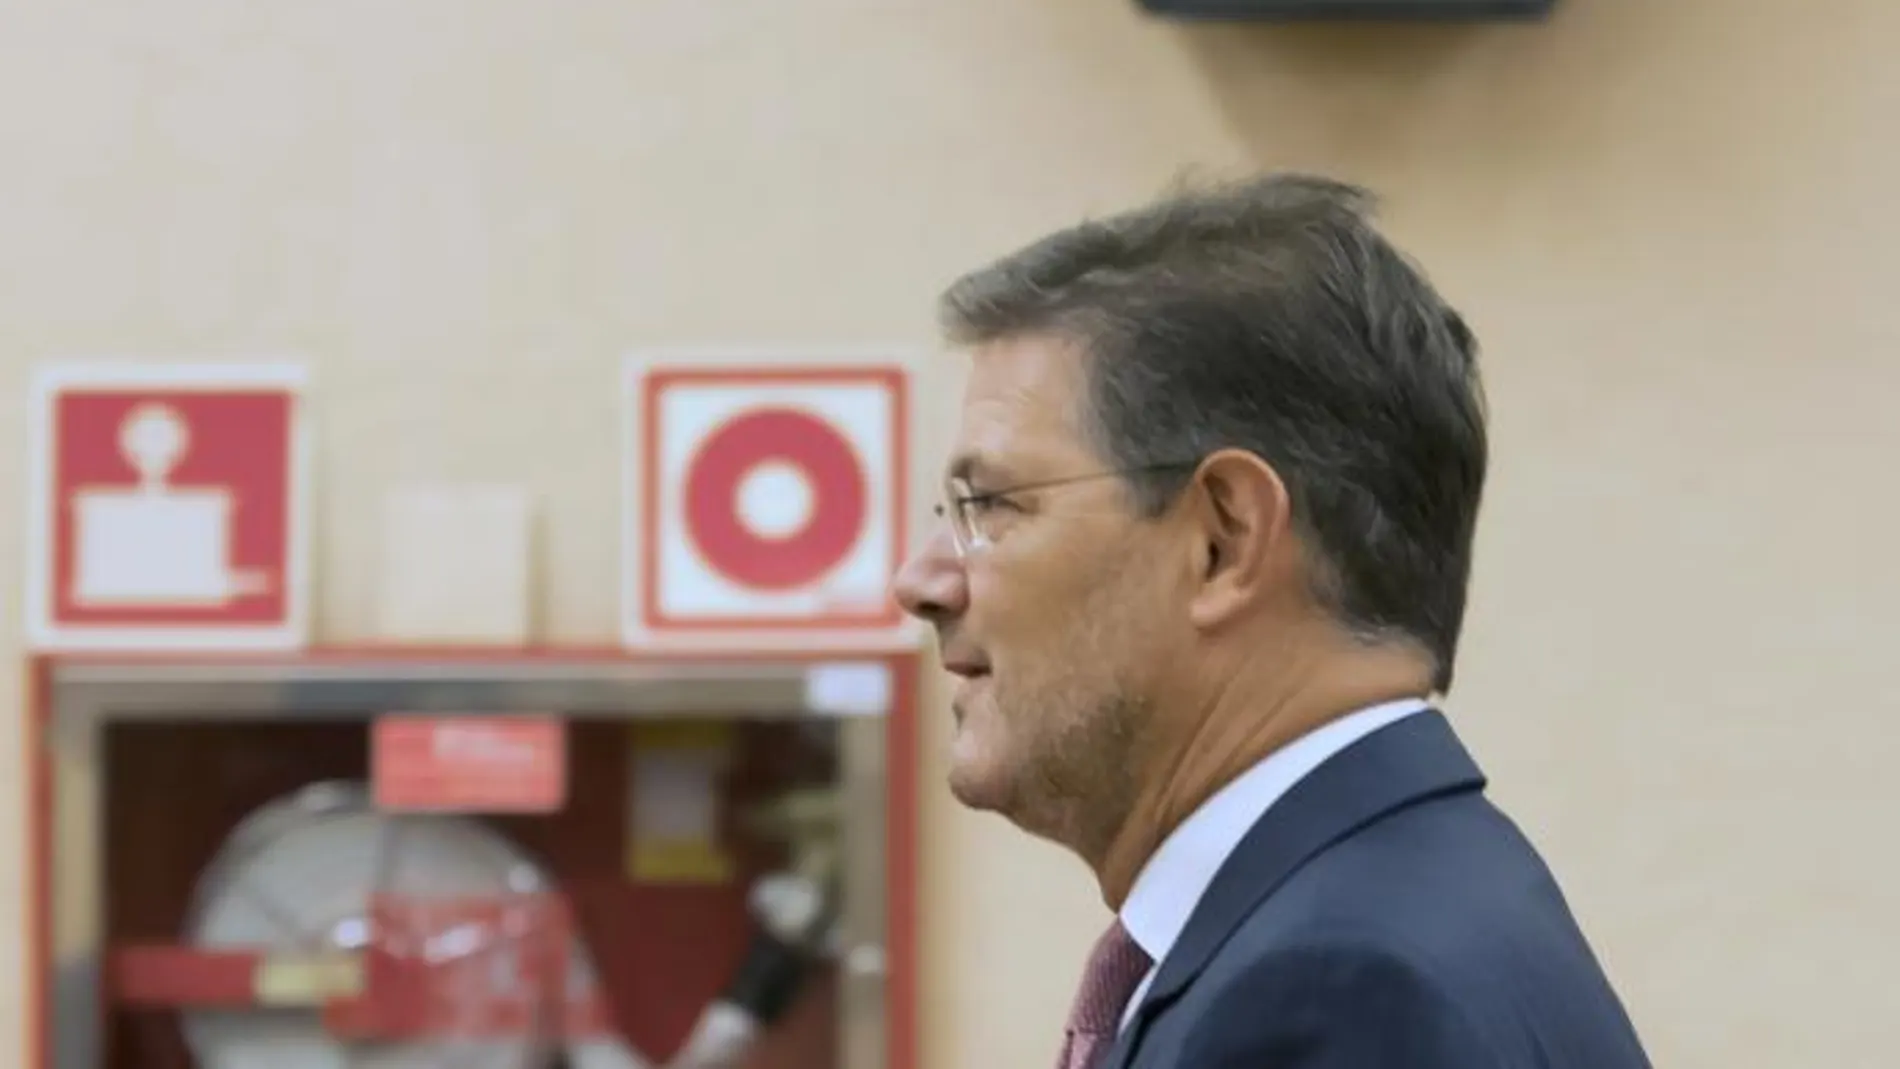 Rafael Catalá, con sus manifestaciones sobre el juez discrepante de «La Manada» se encontró con el rechazo unánime de jueces y fiscales, pero con el apoyo del principal partido de la oposición